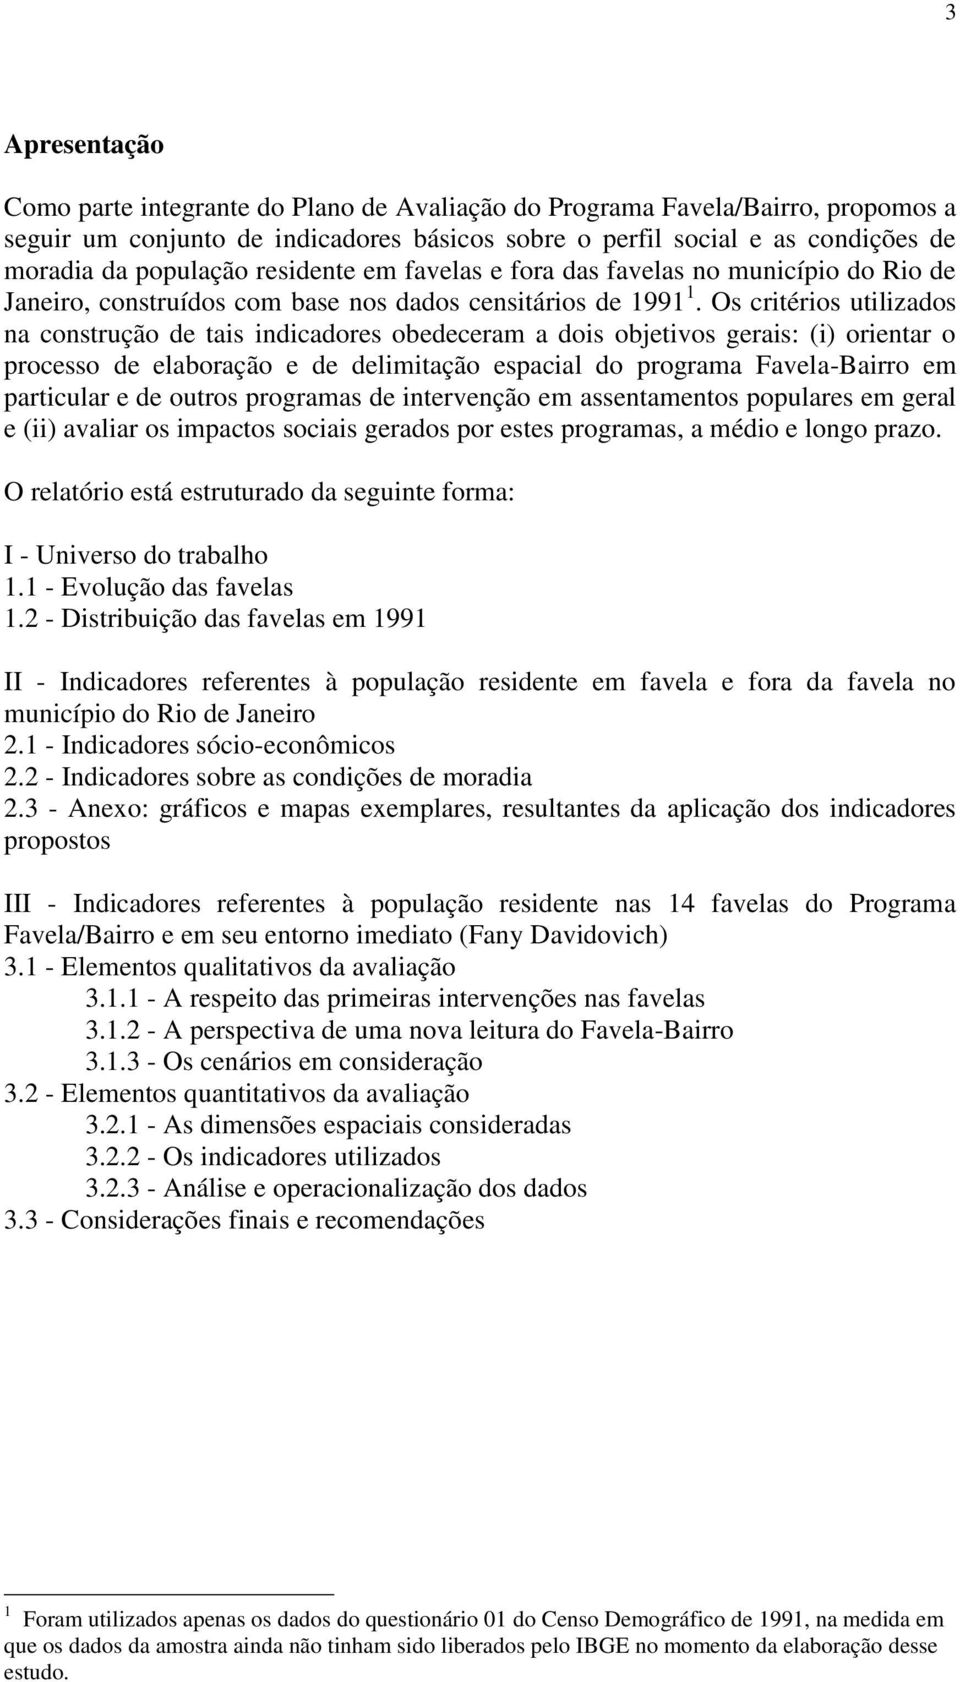 Os critérios utilizados na construção de tais indicadores obedeceram a dois objetivos gerais: (i) orientar o processo de elaboração e de delimitação espacial do programa Favela-Bairro em particular e